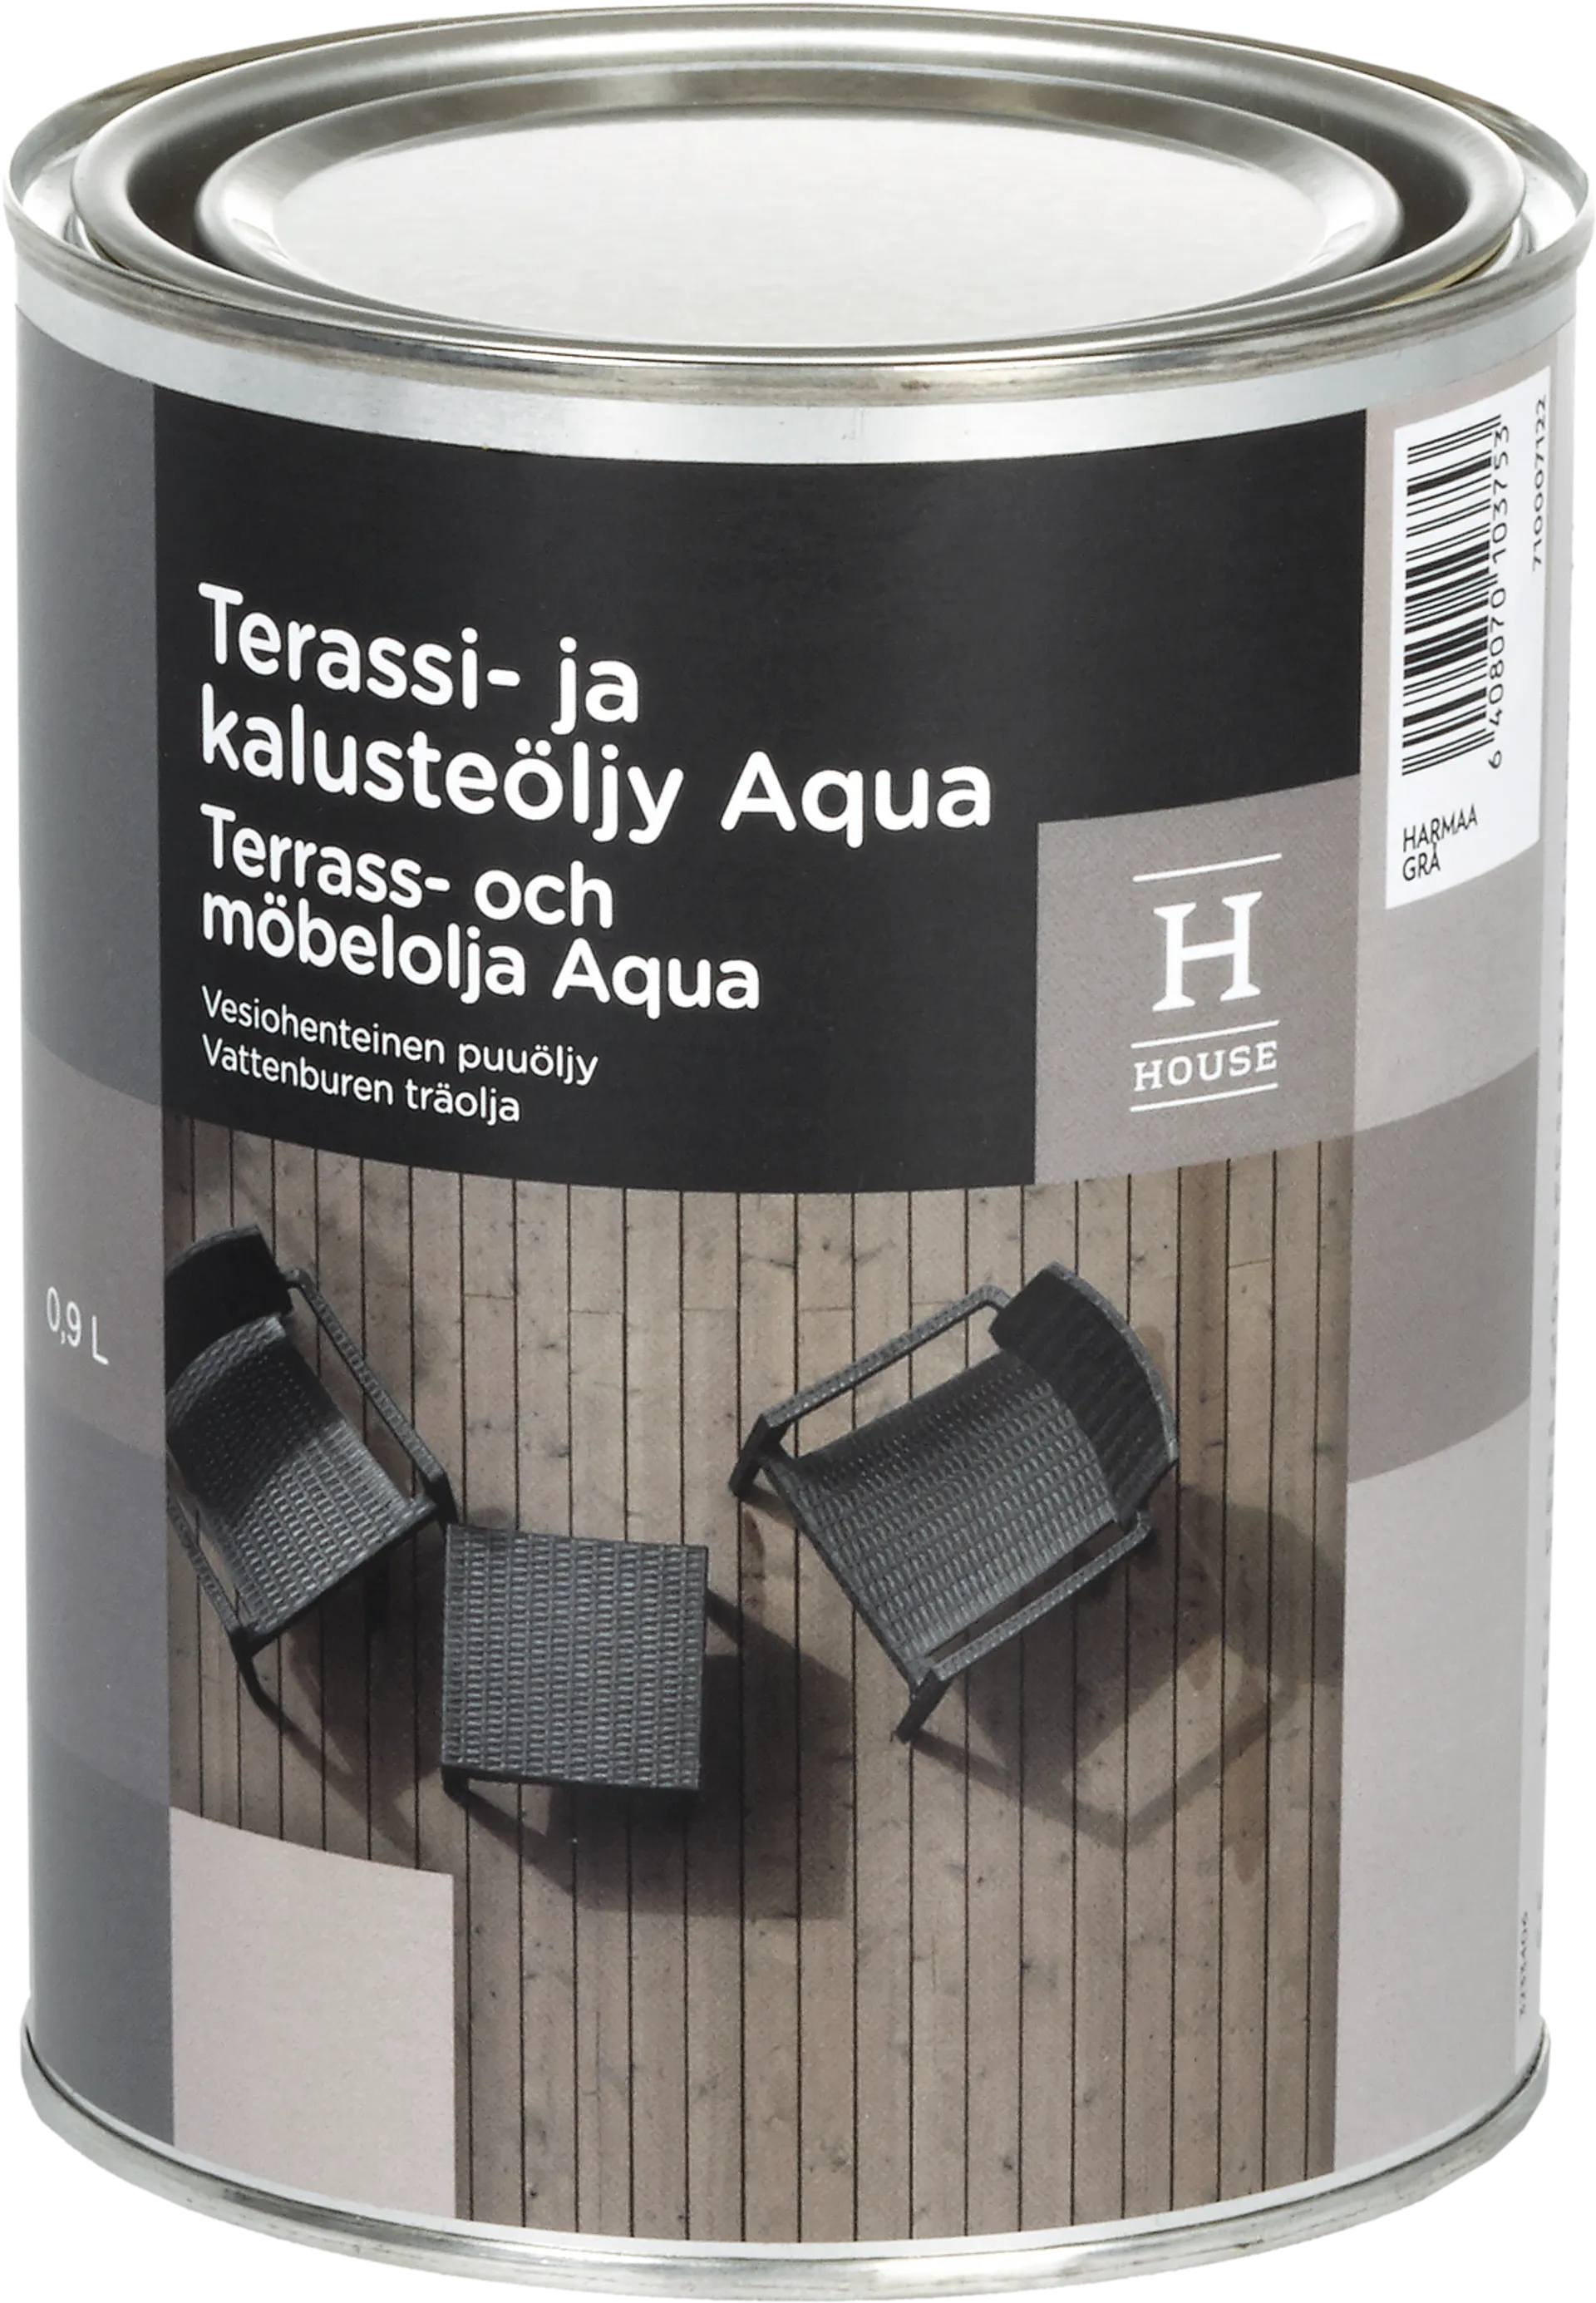 House terassi- ja kalusteöljy Aqua 0,9l harmaa ulkokäyttöön